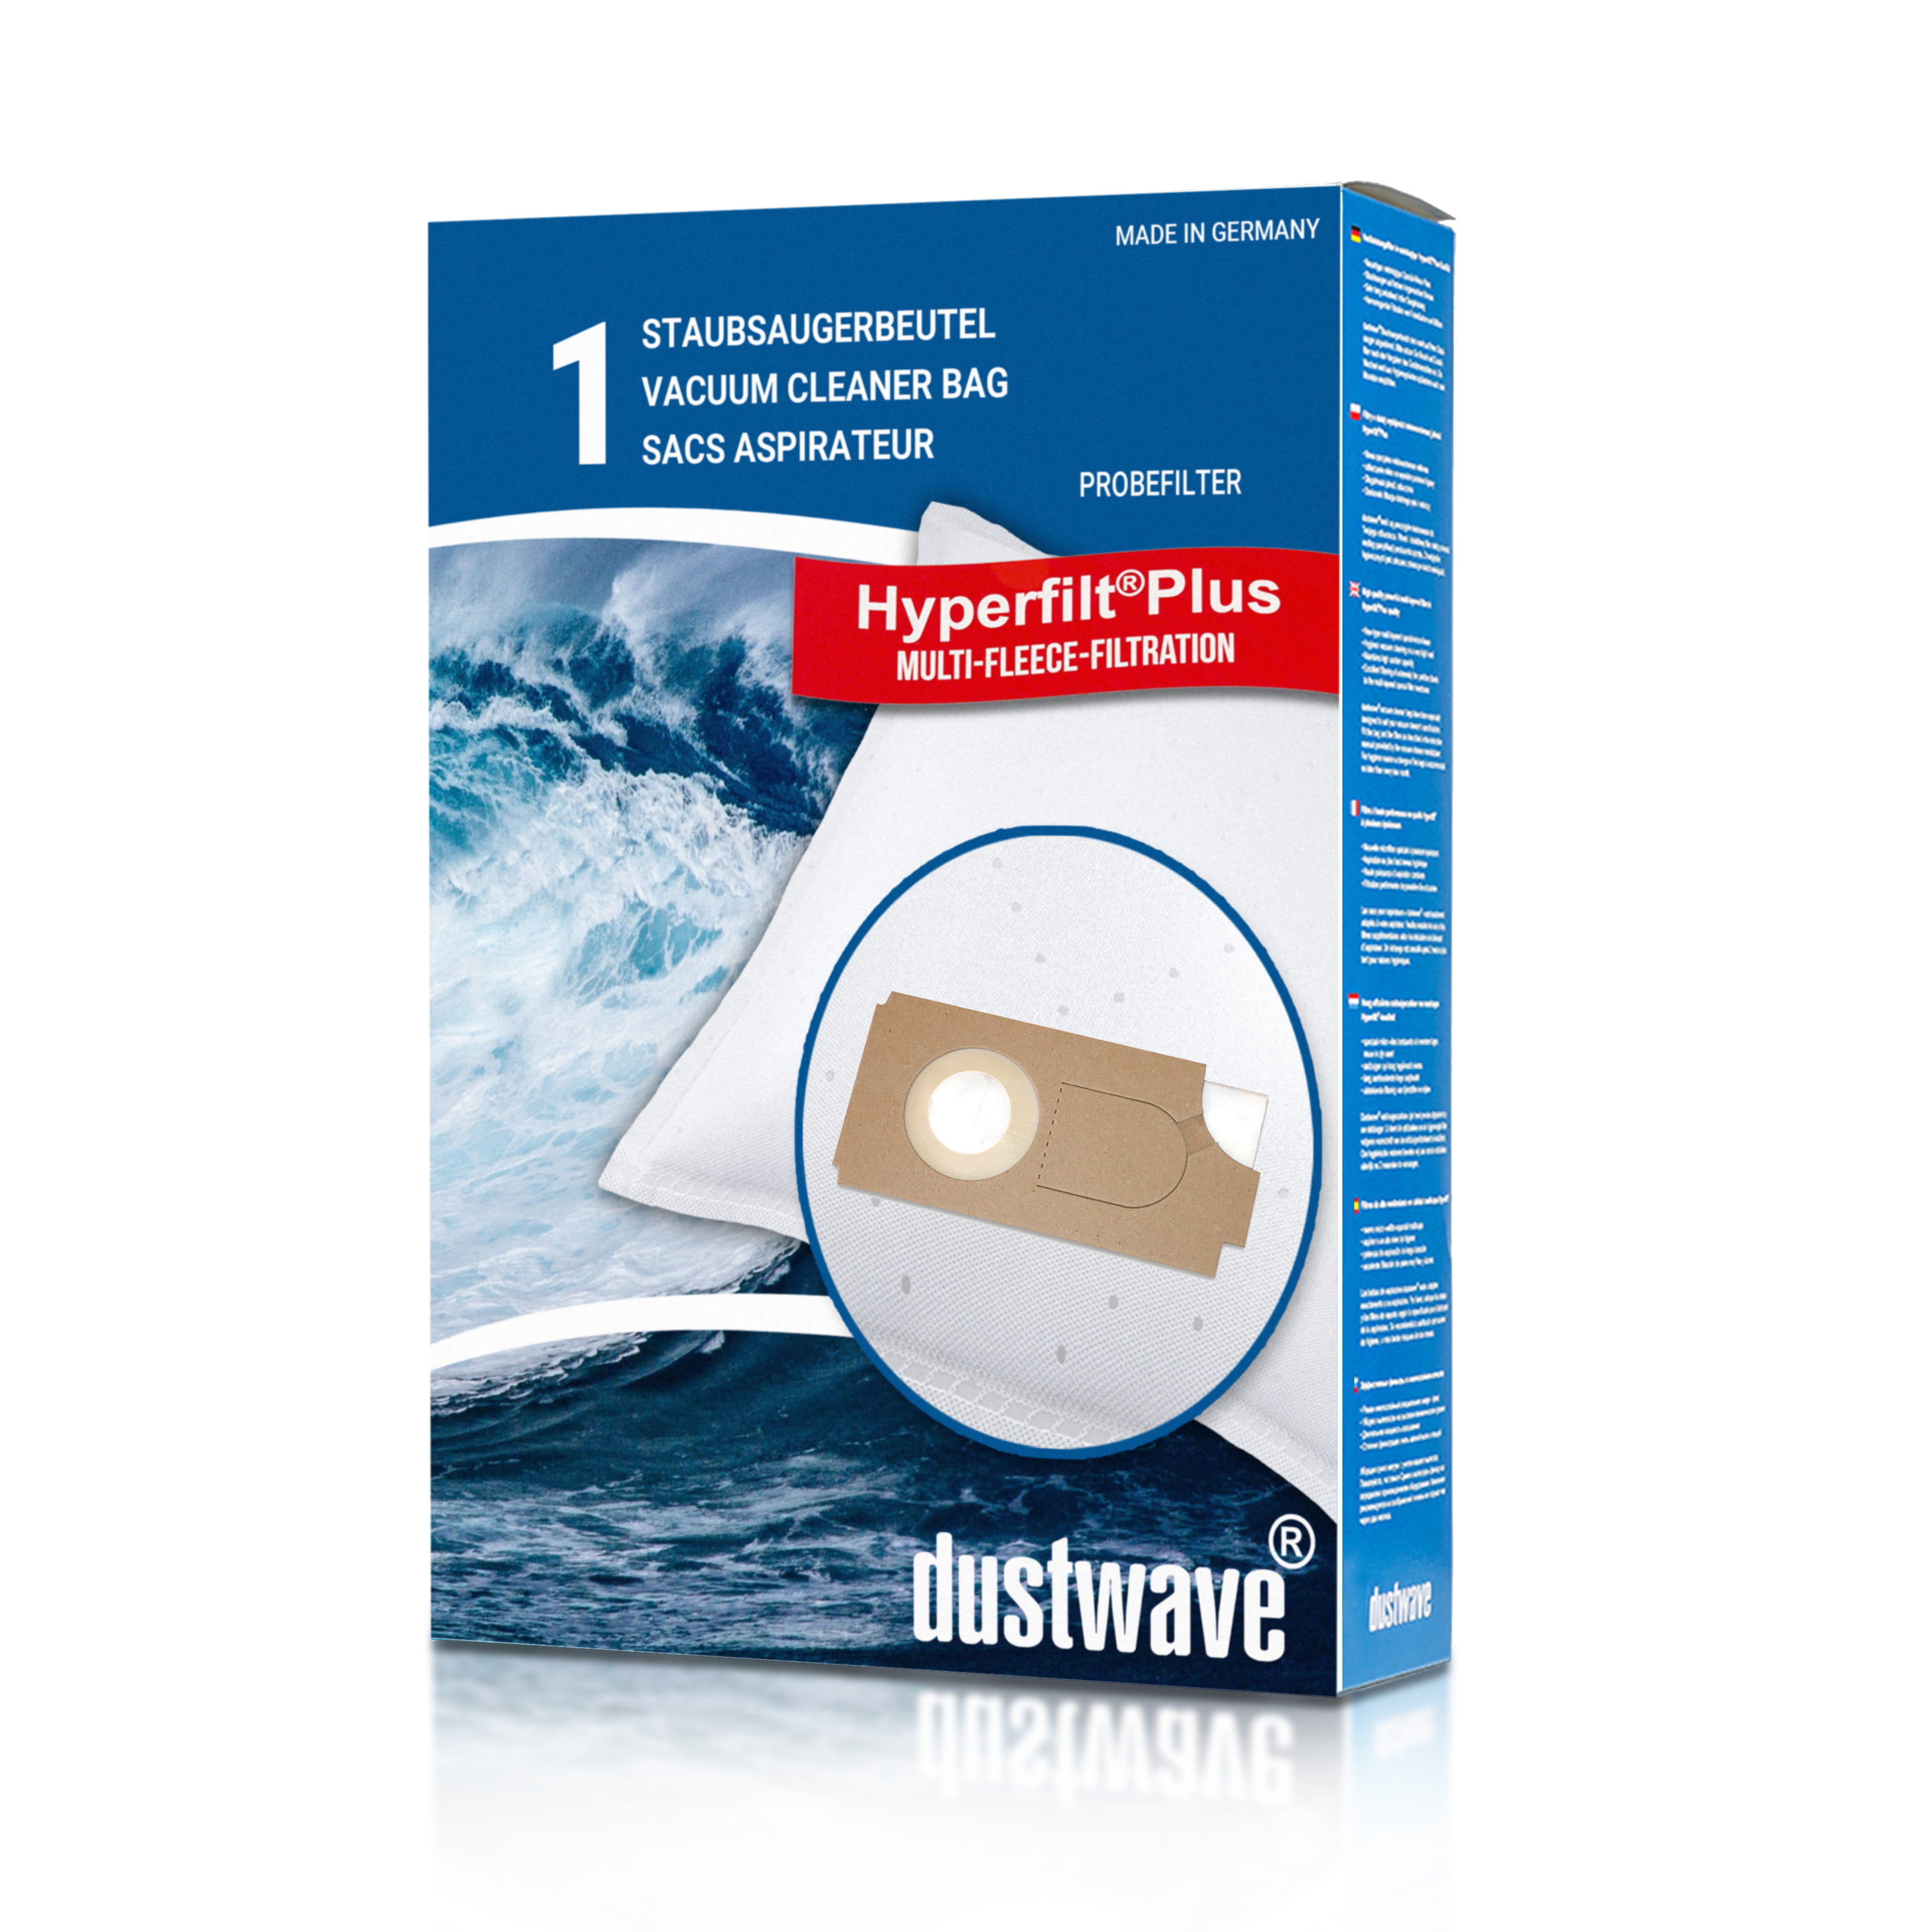 Dustwave® 1 Staubsaugerbeutel für Columbus BS 360 » 460 - hocheffizient mit Hygieneverschluss - Made in Germany